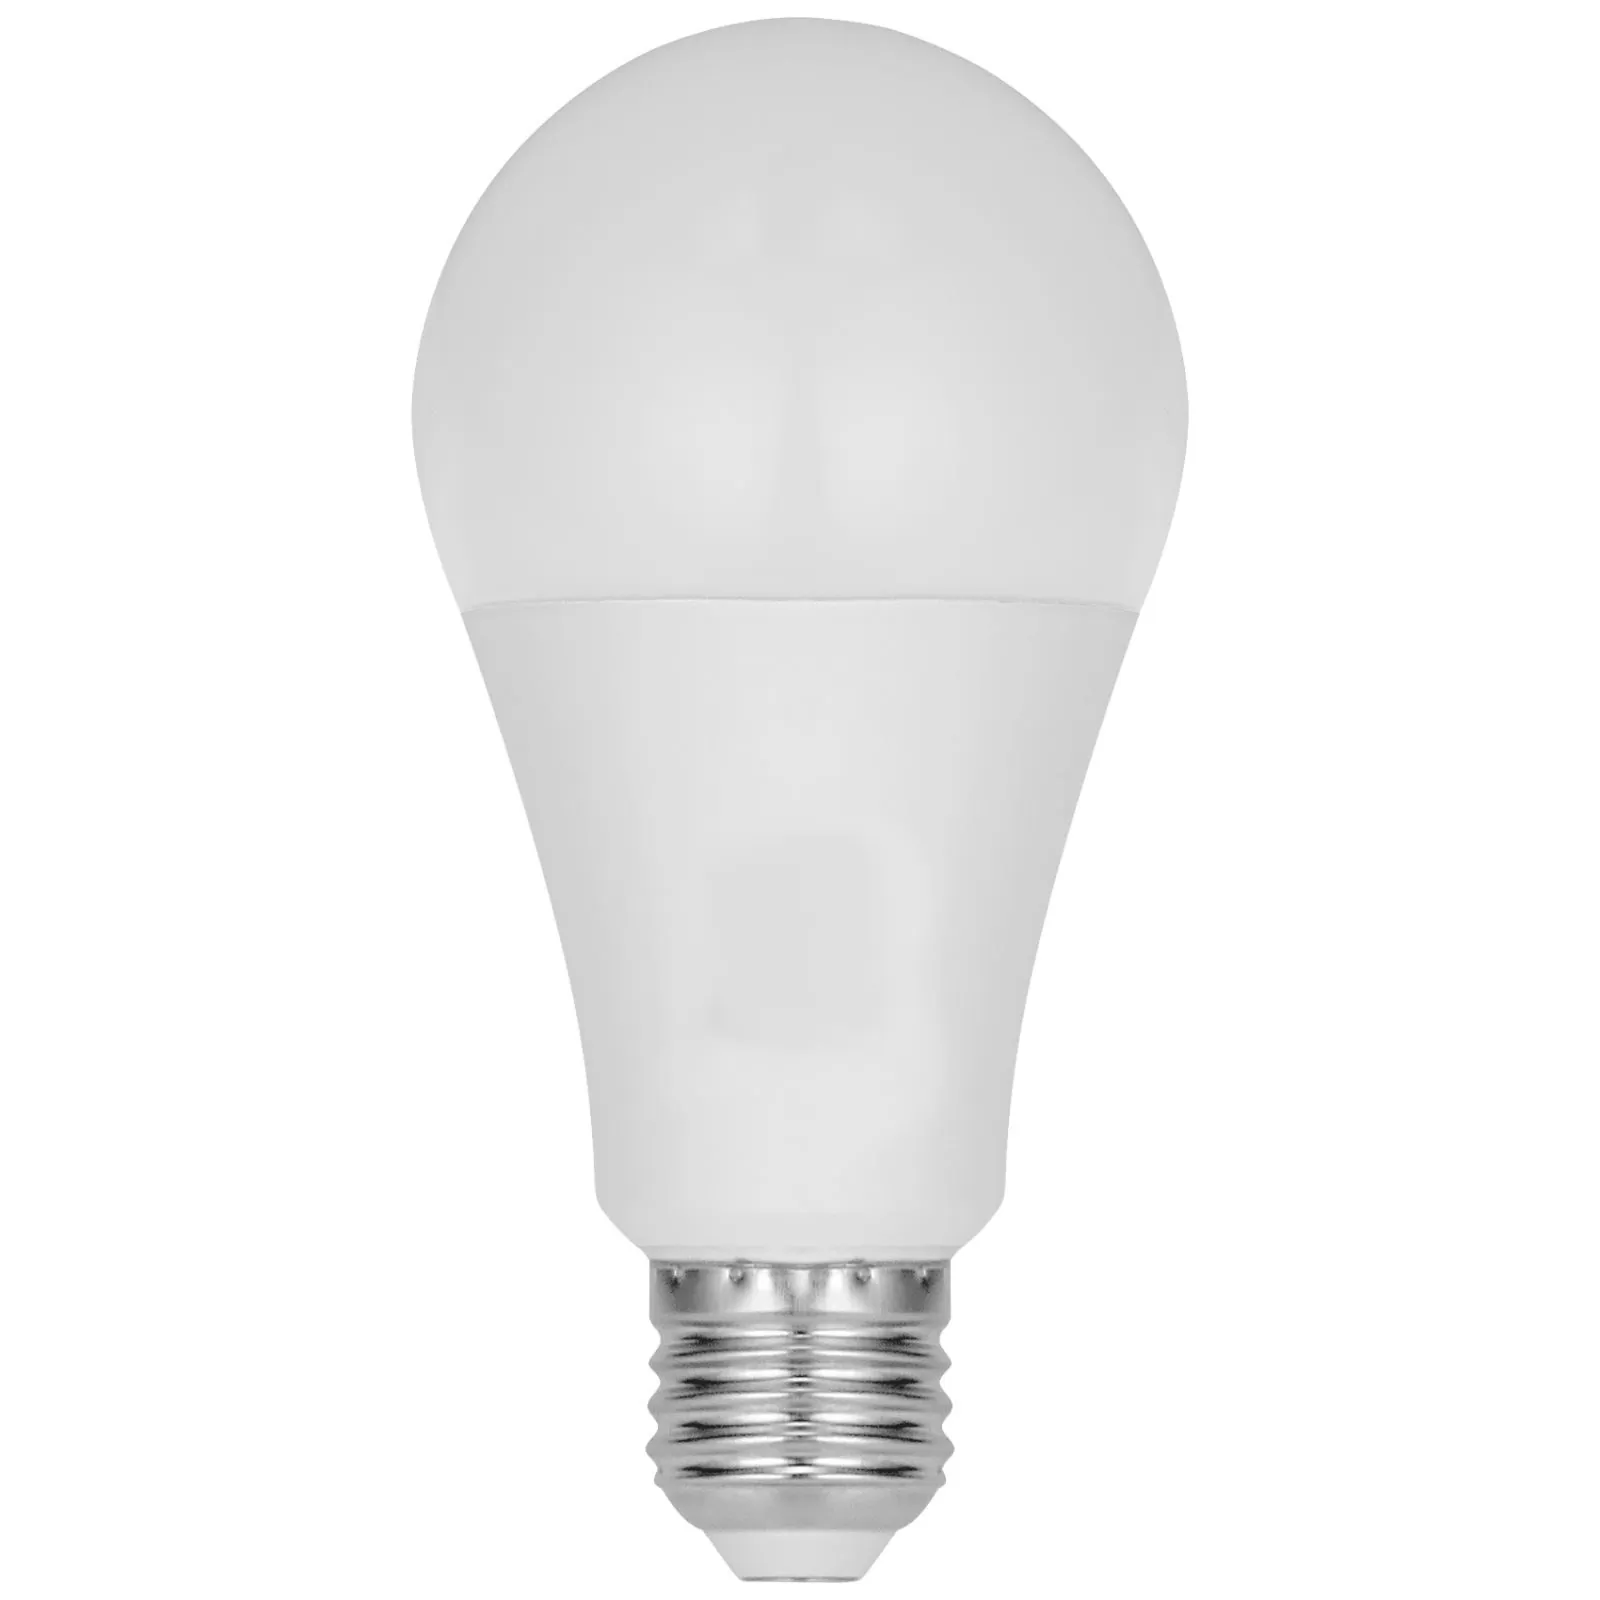 خرید و قیمت لامپ رشد گیاه 12 وات آیسان مدل حبابی کد ka-012 پایه E27